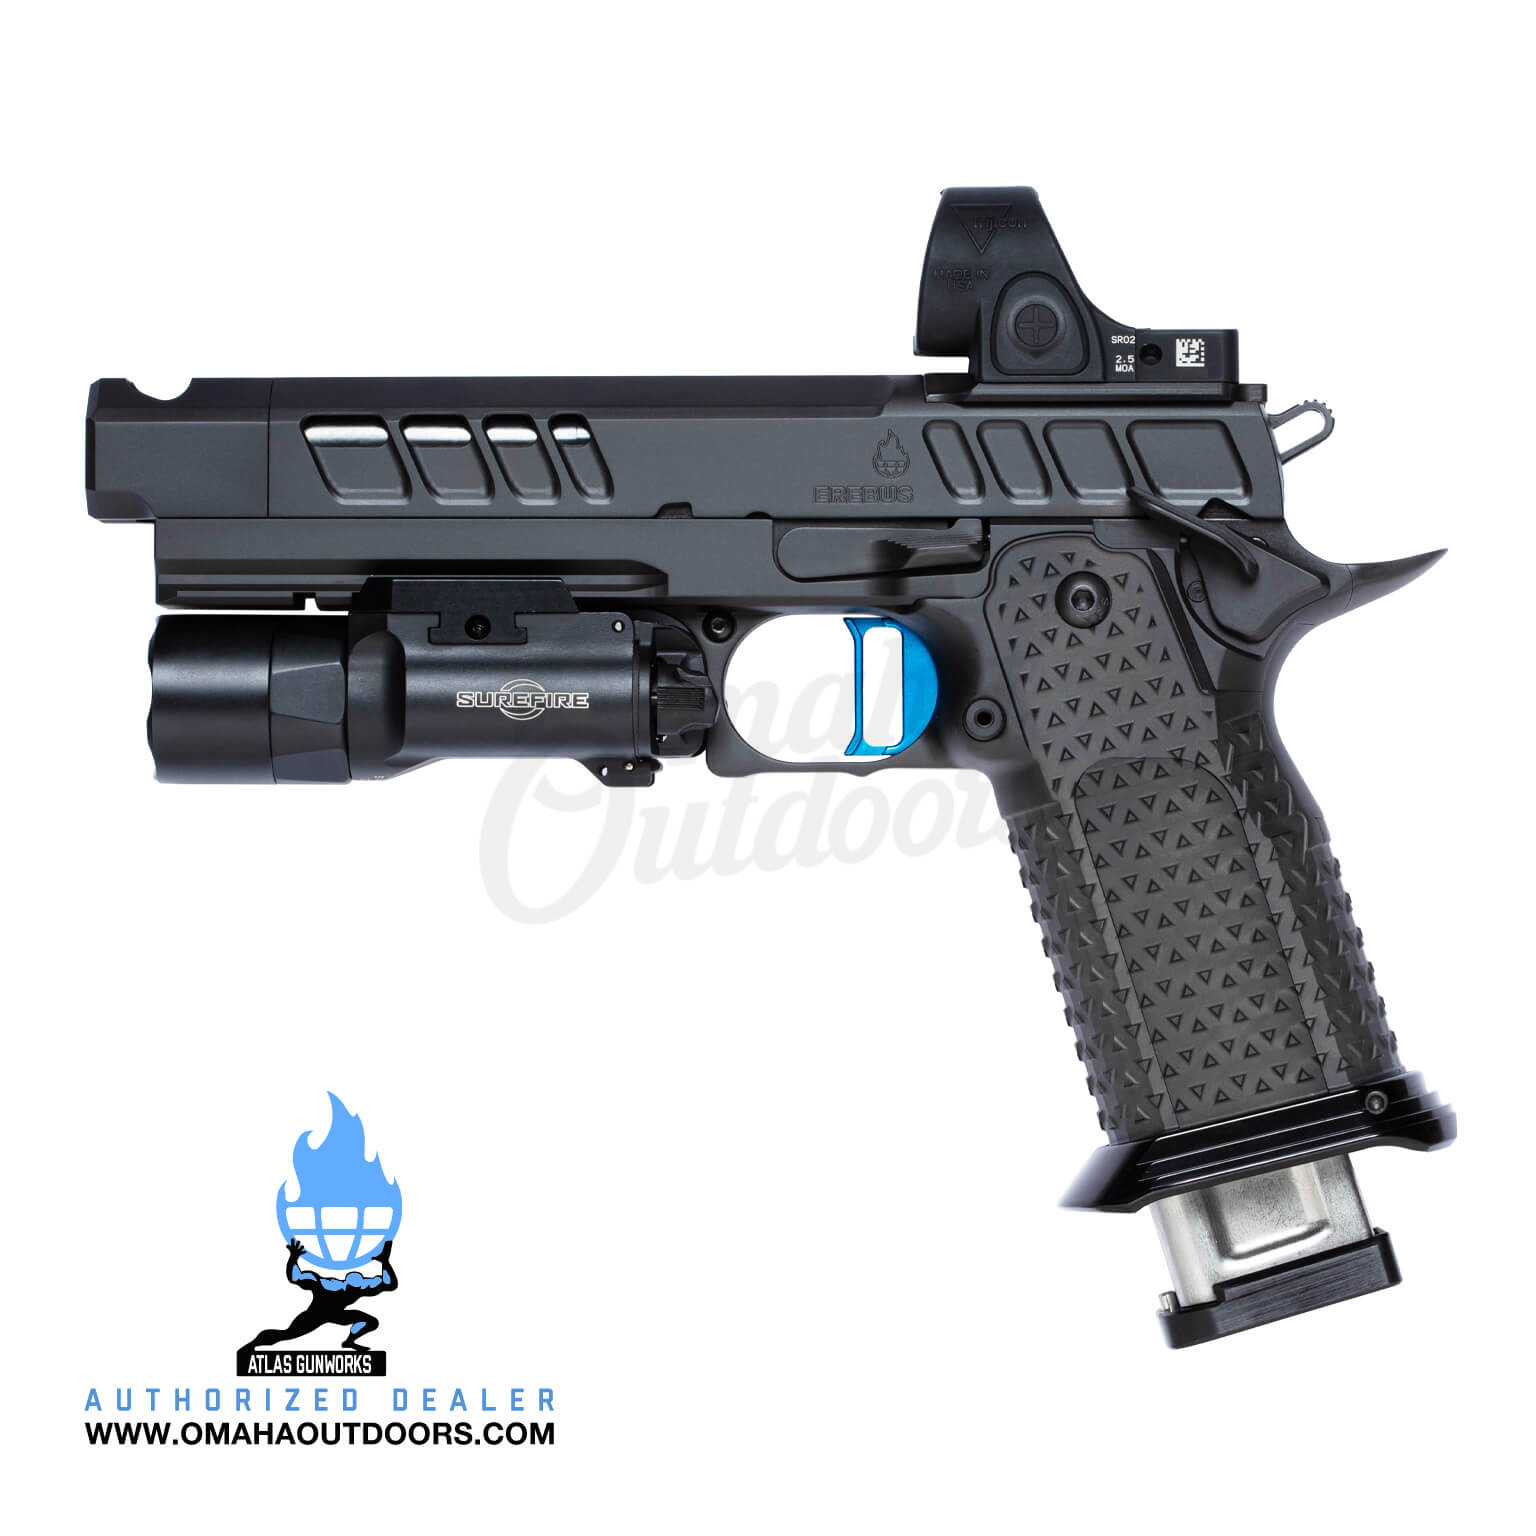 Atlas Gunworks 2011 Erebus V2 DLC Pistol 23 RD 9mm Blue Trigger SRO